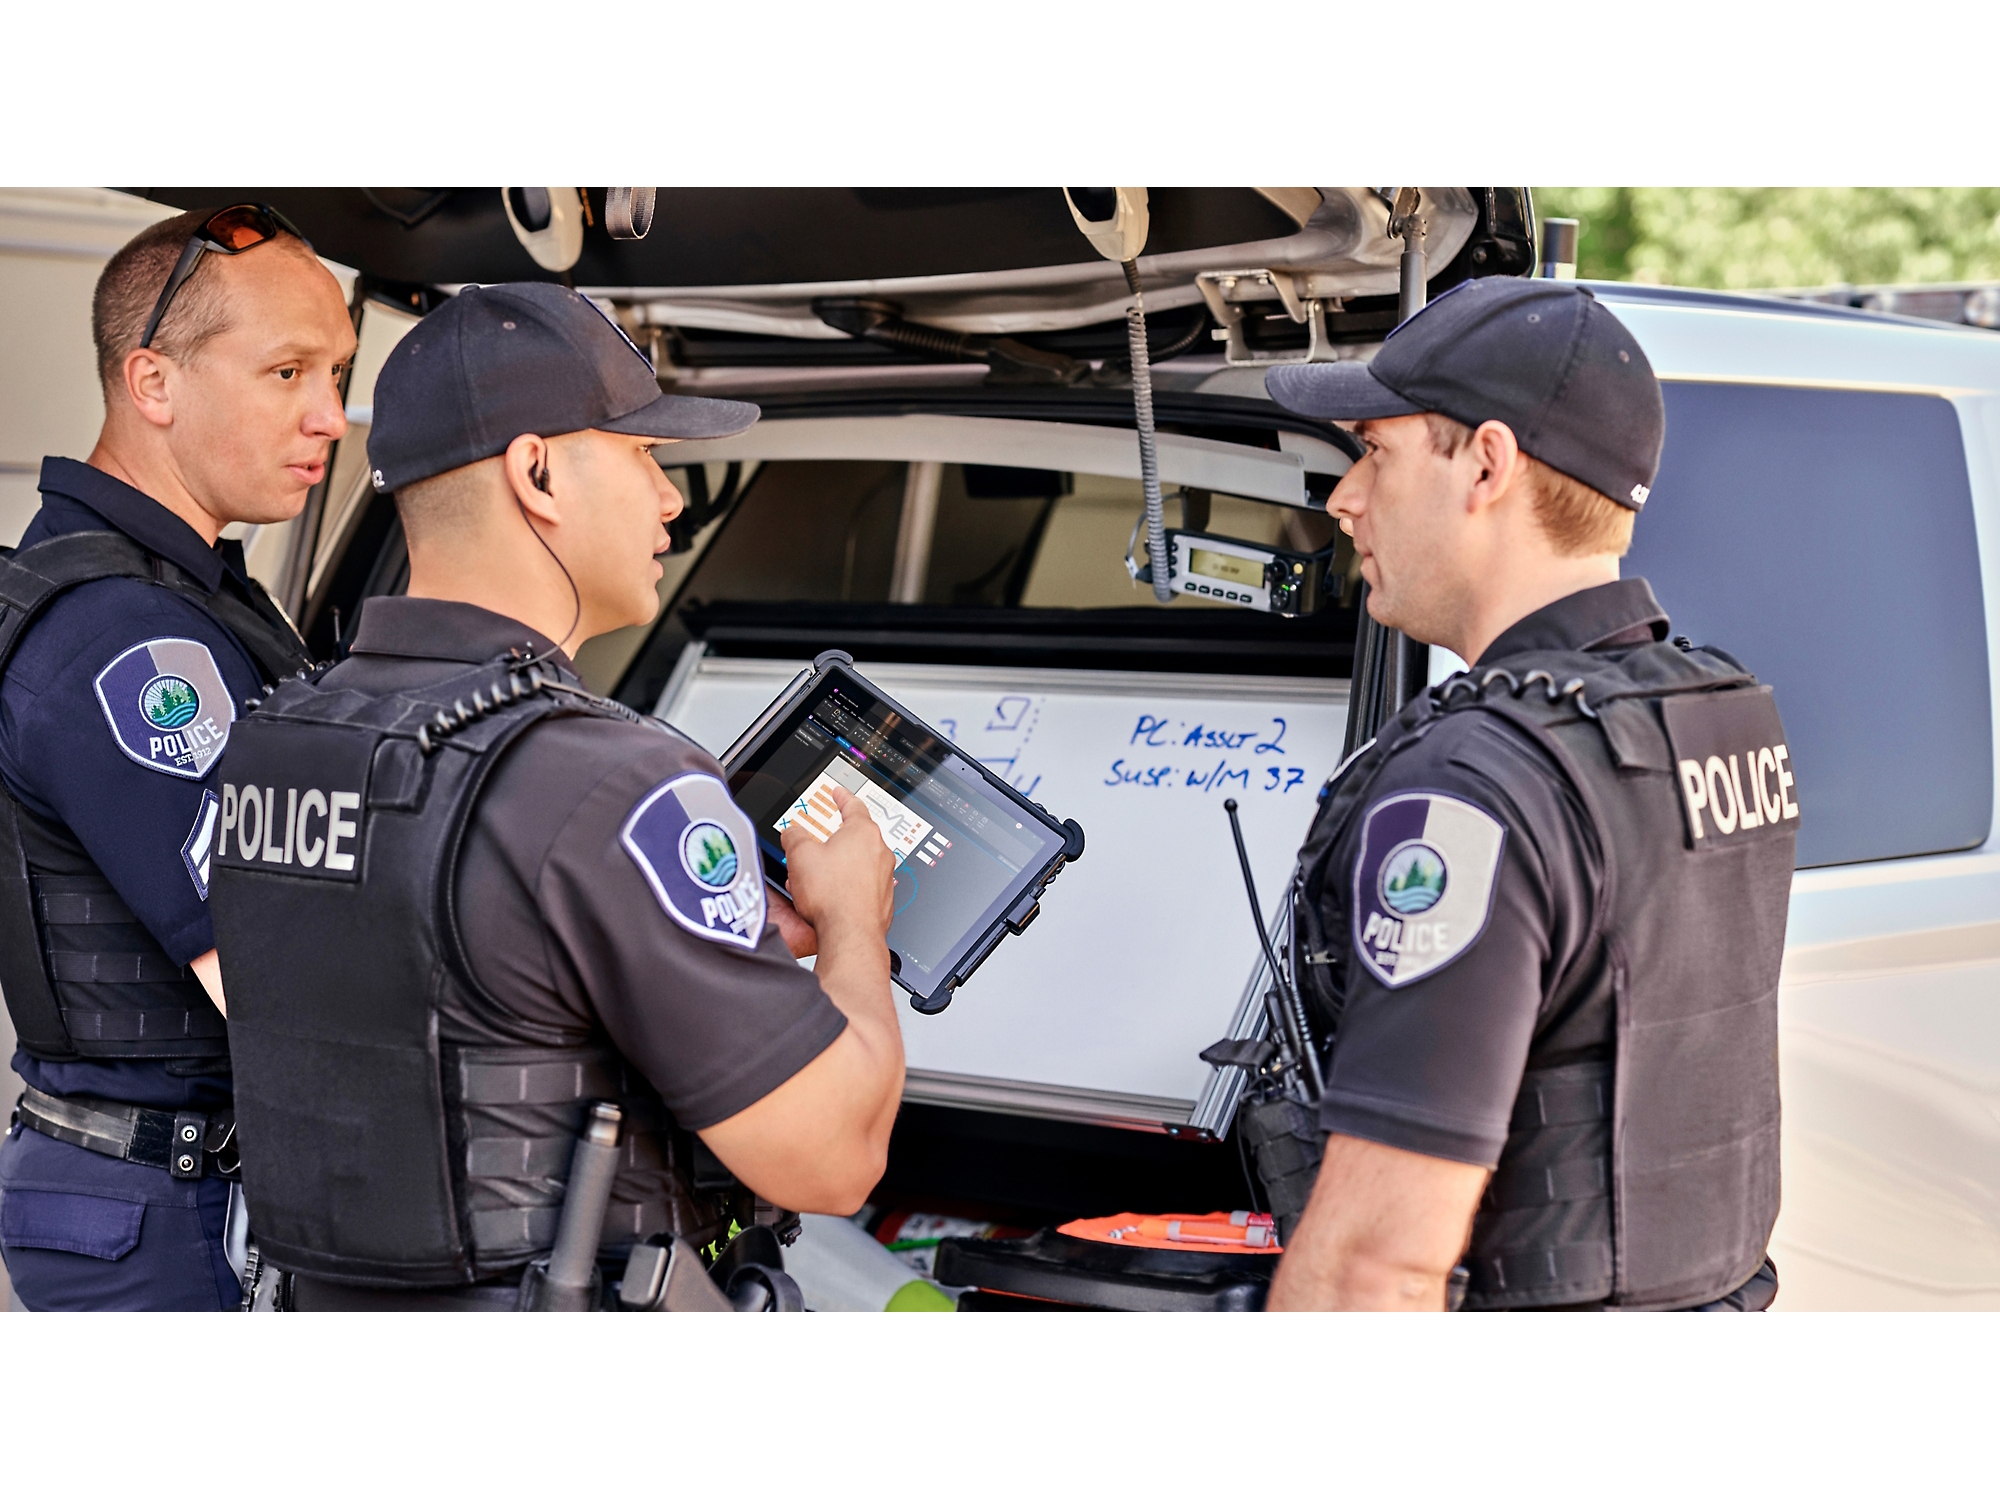 Τρεις αστυνομικοί εξετάζουν πληροφορίες σε ένα ψηφιακό tablet δίπλα στο αυτοκίνητο με ανοιχτό το πορτ-μπαγκάζ